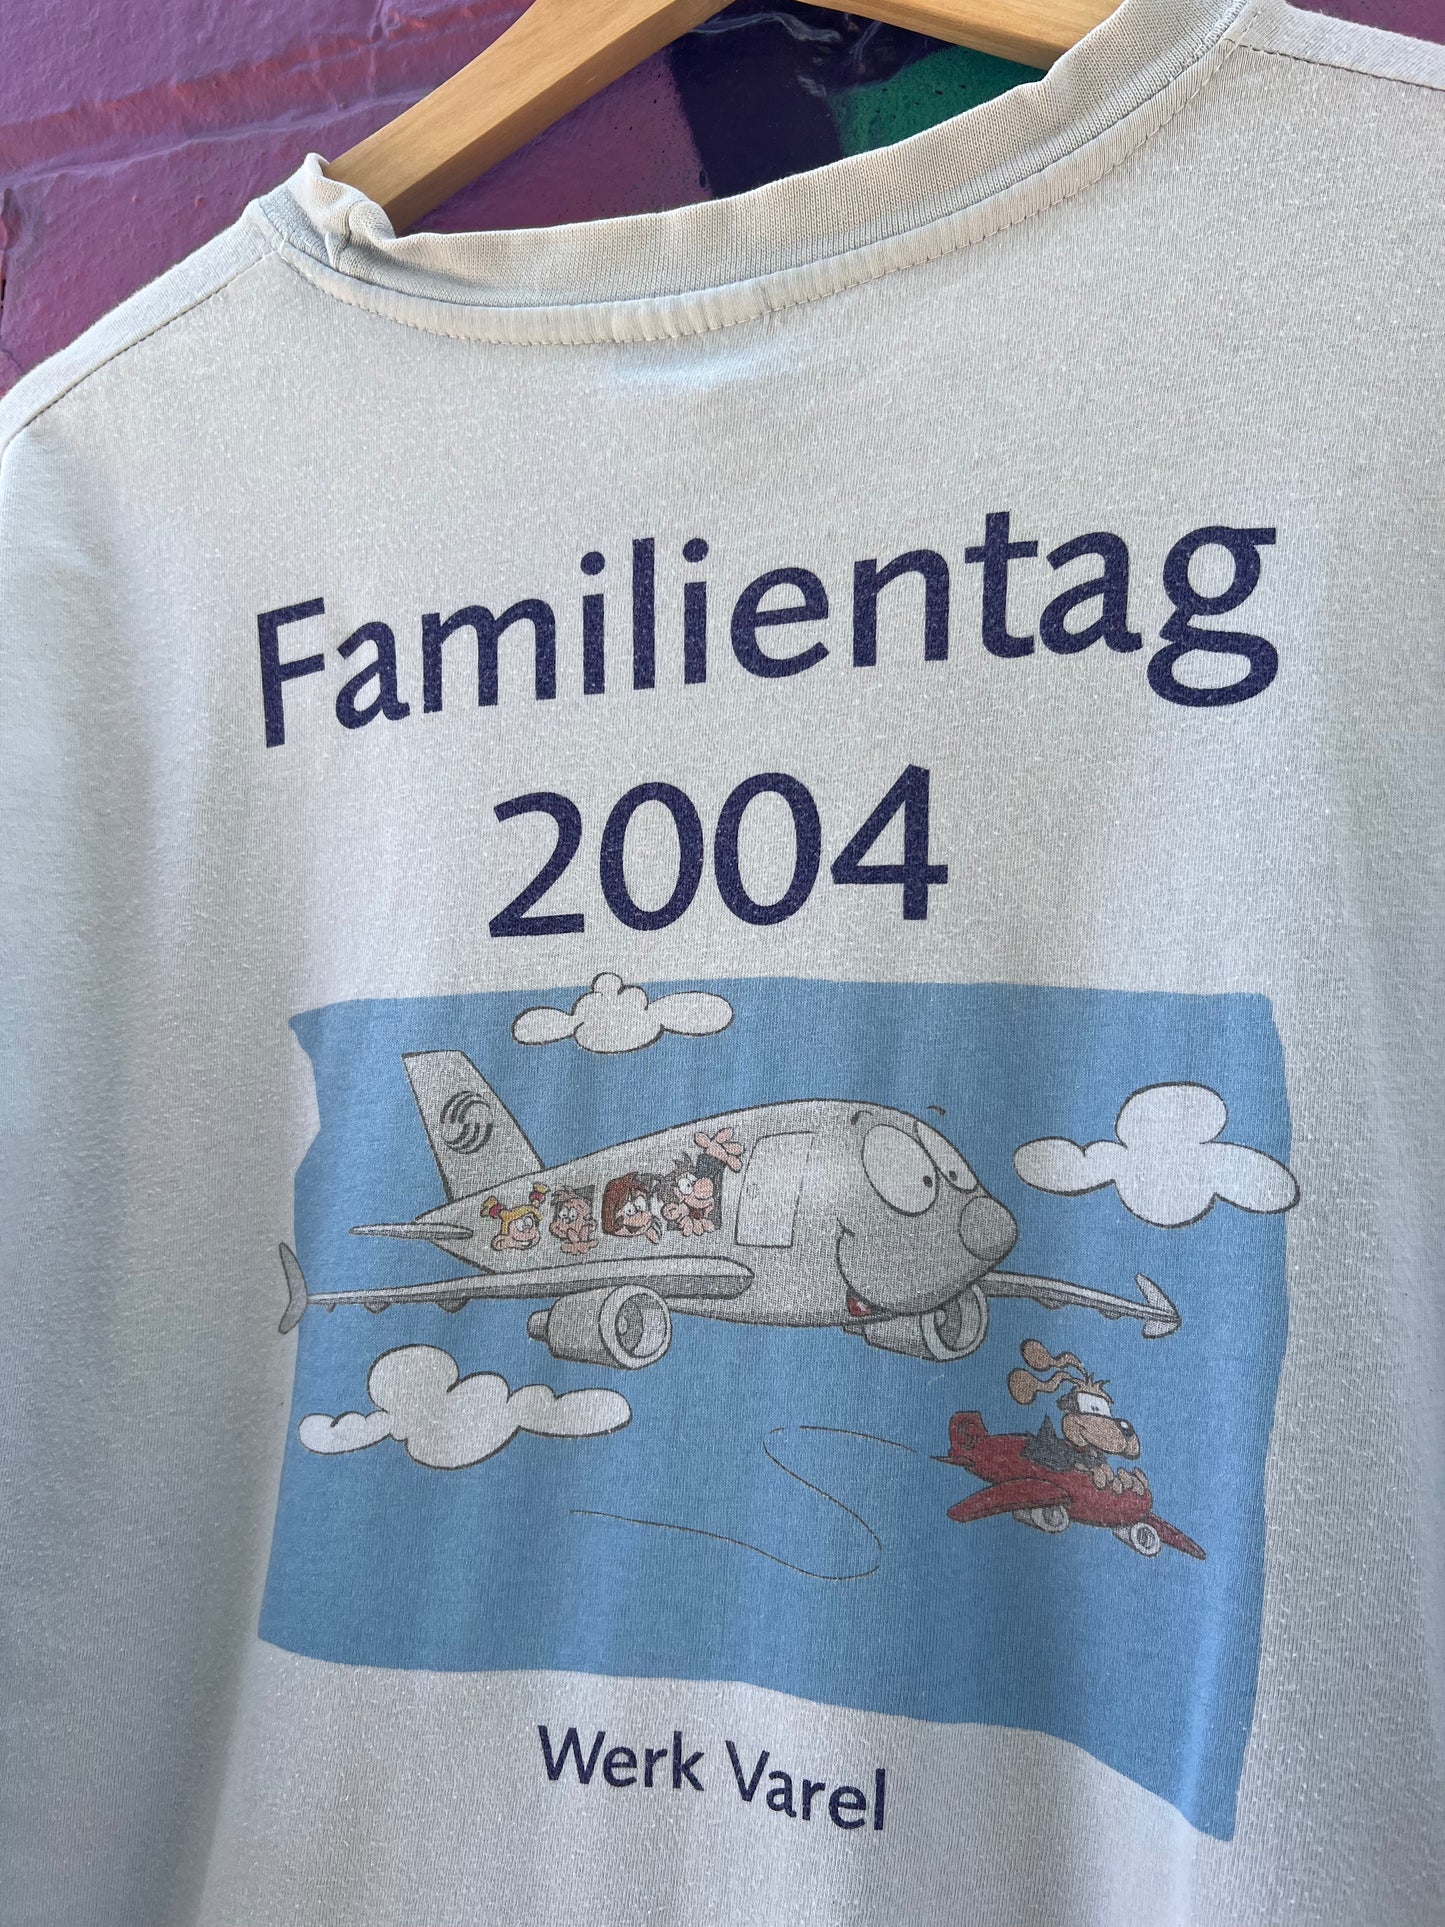 XL - 2004 Familientag Werk Varel DS